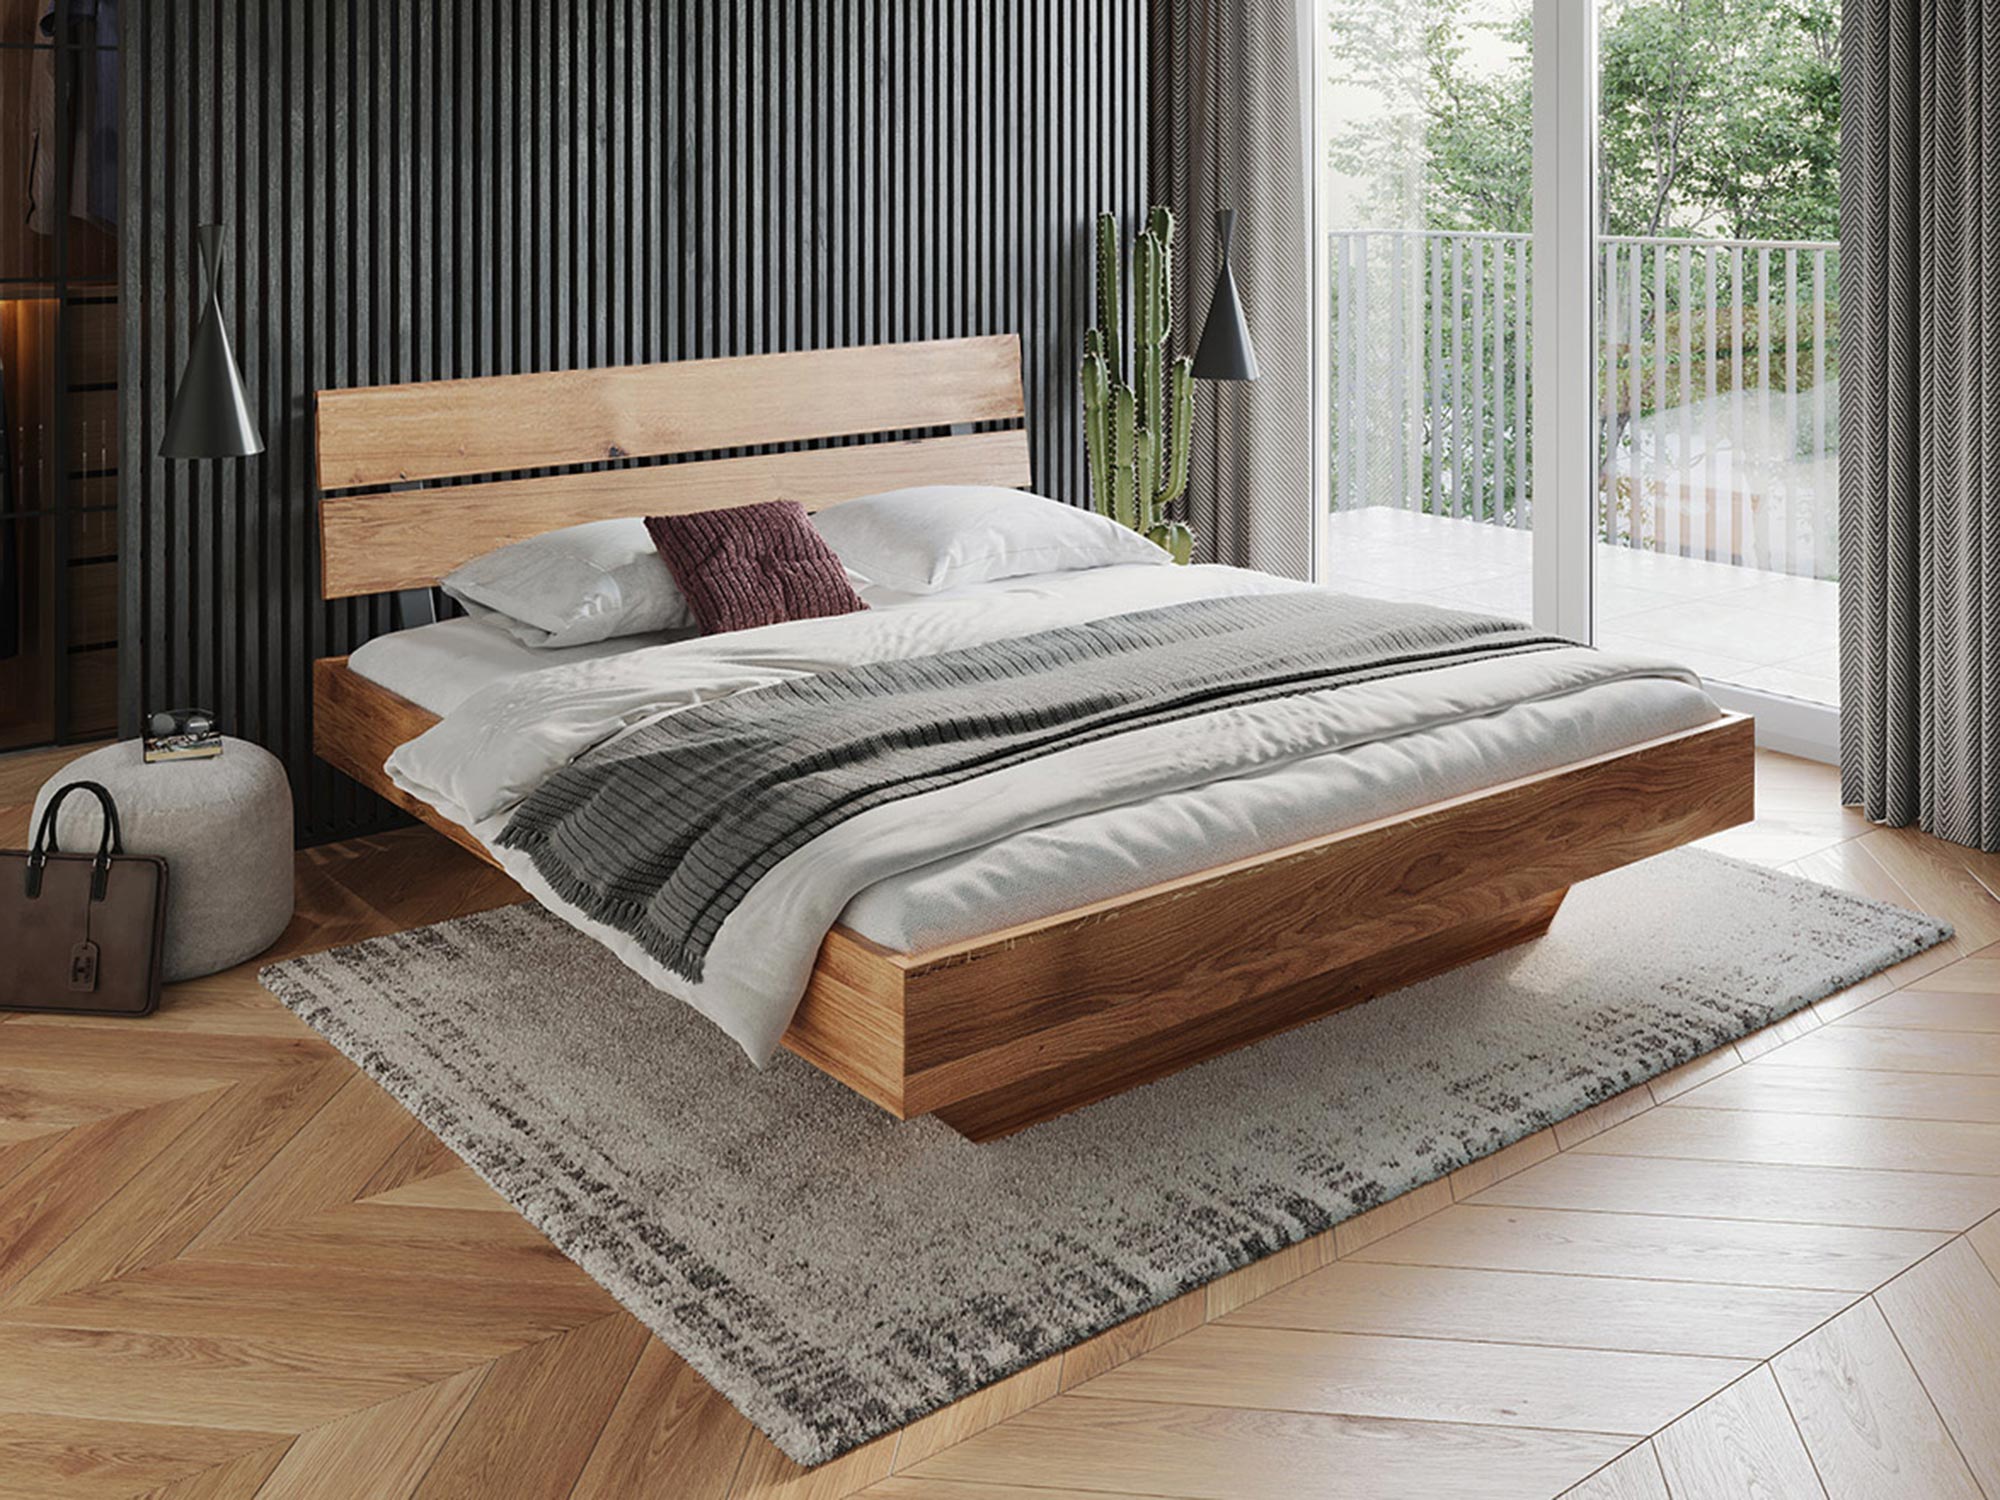 Łóżko drewniane 160×200 – klasyka i komfort w twojej sypialni